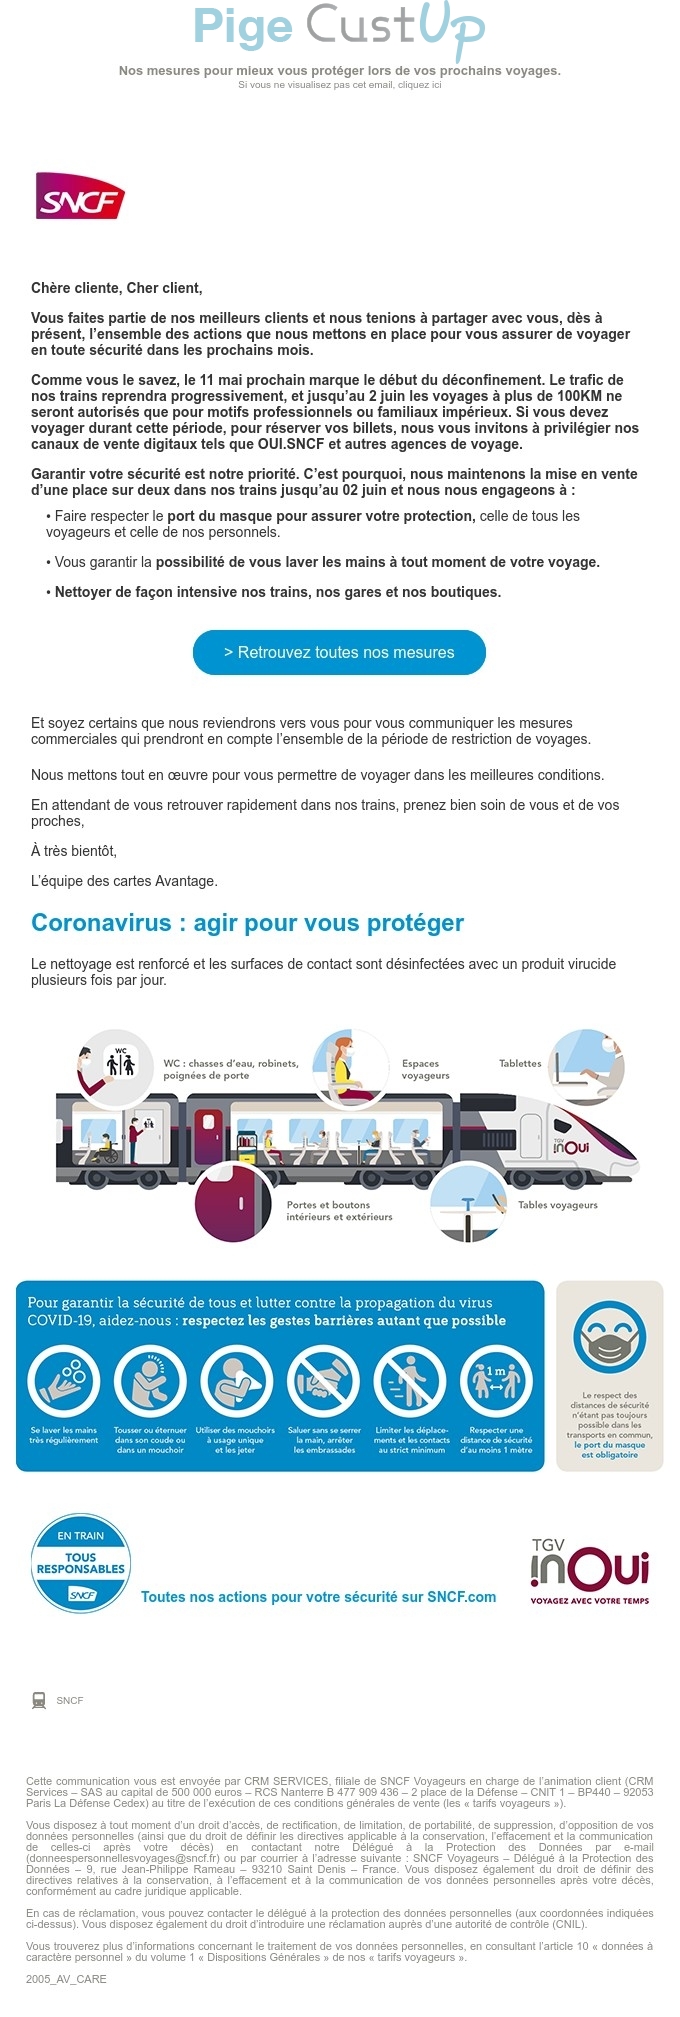 Exemple de Type de media  e-mailing - SNCF - Marketing marque - Communication Services - Nouveaux Services - Institutionnel - Marketing relationnel - Newsletter